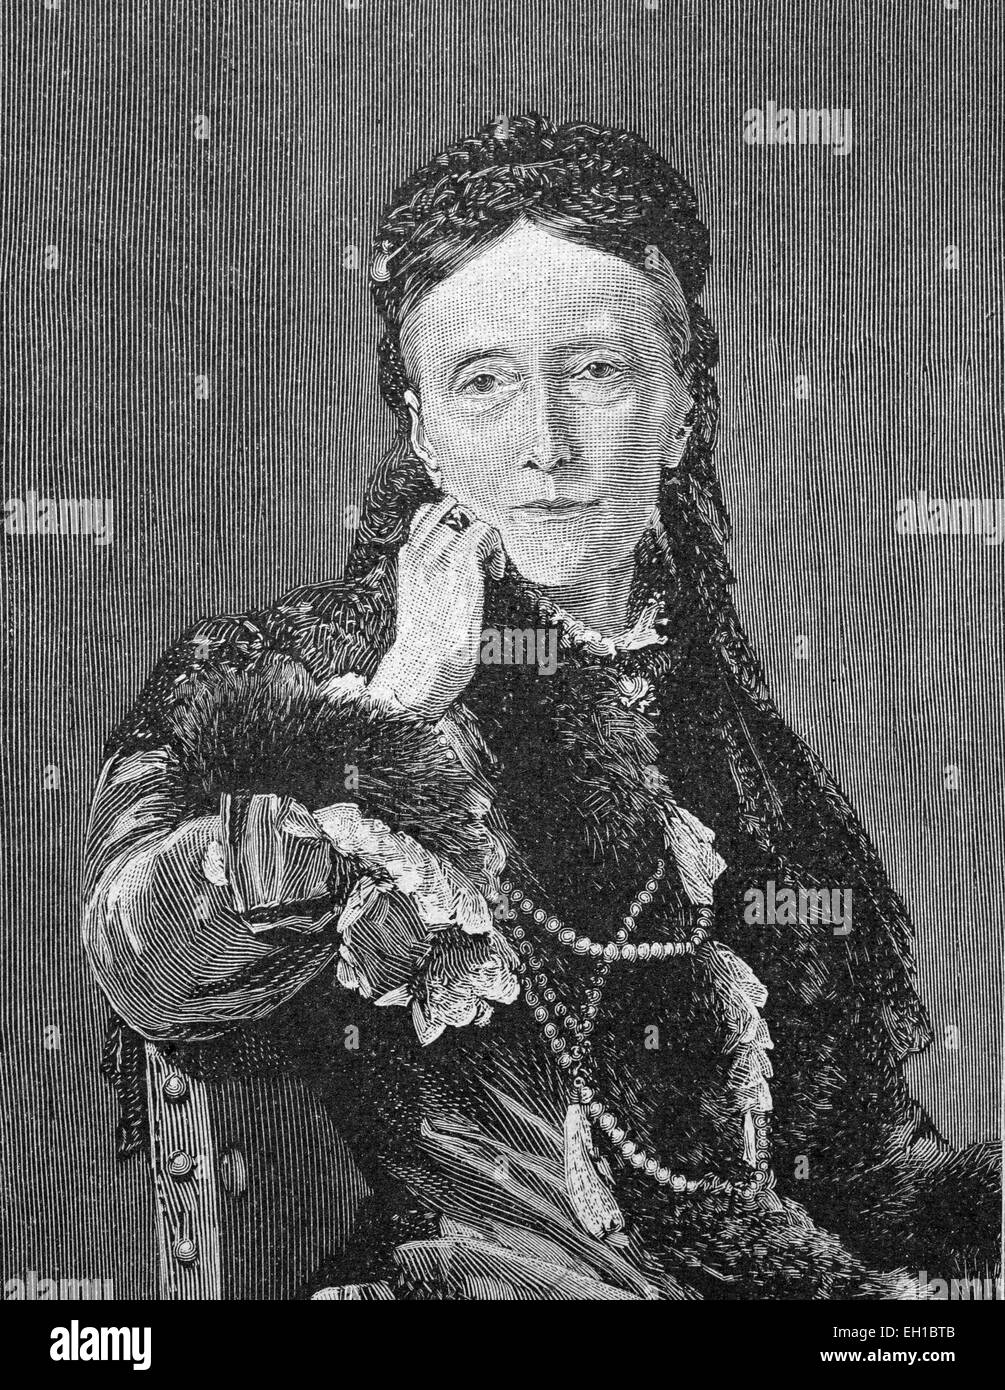 La granduchessa Olga Nikolaevna della Russia, 1822 - 1892, come regina vedova del Württemberg, foto storiche, circa 1893 Foto Stock